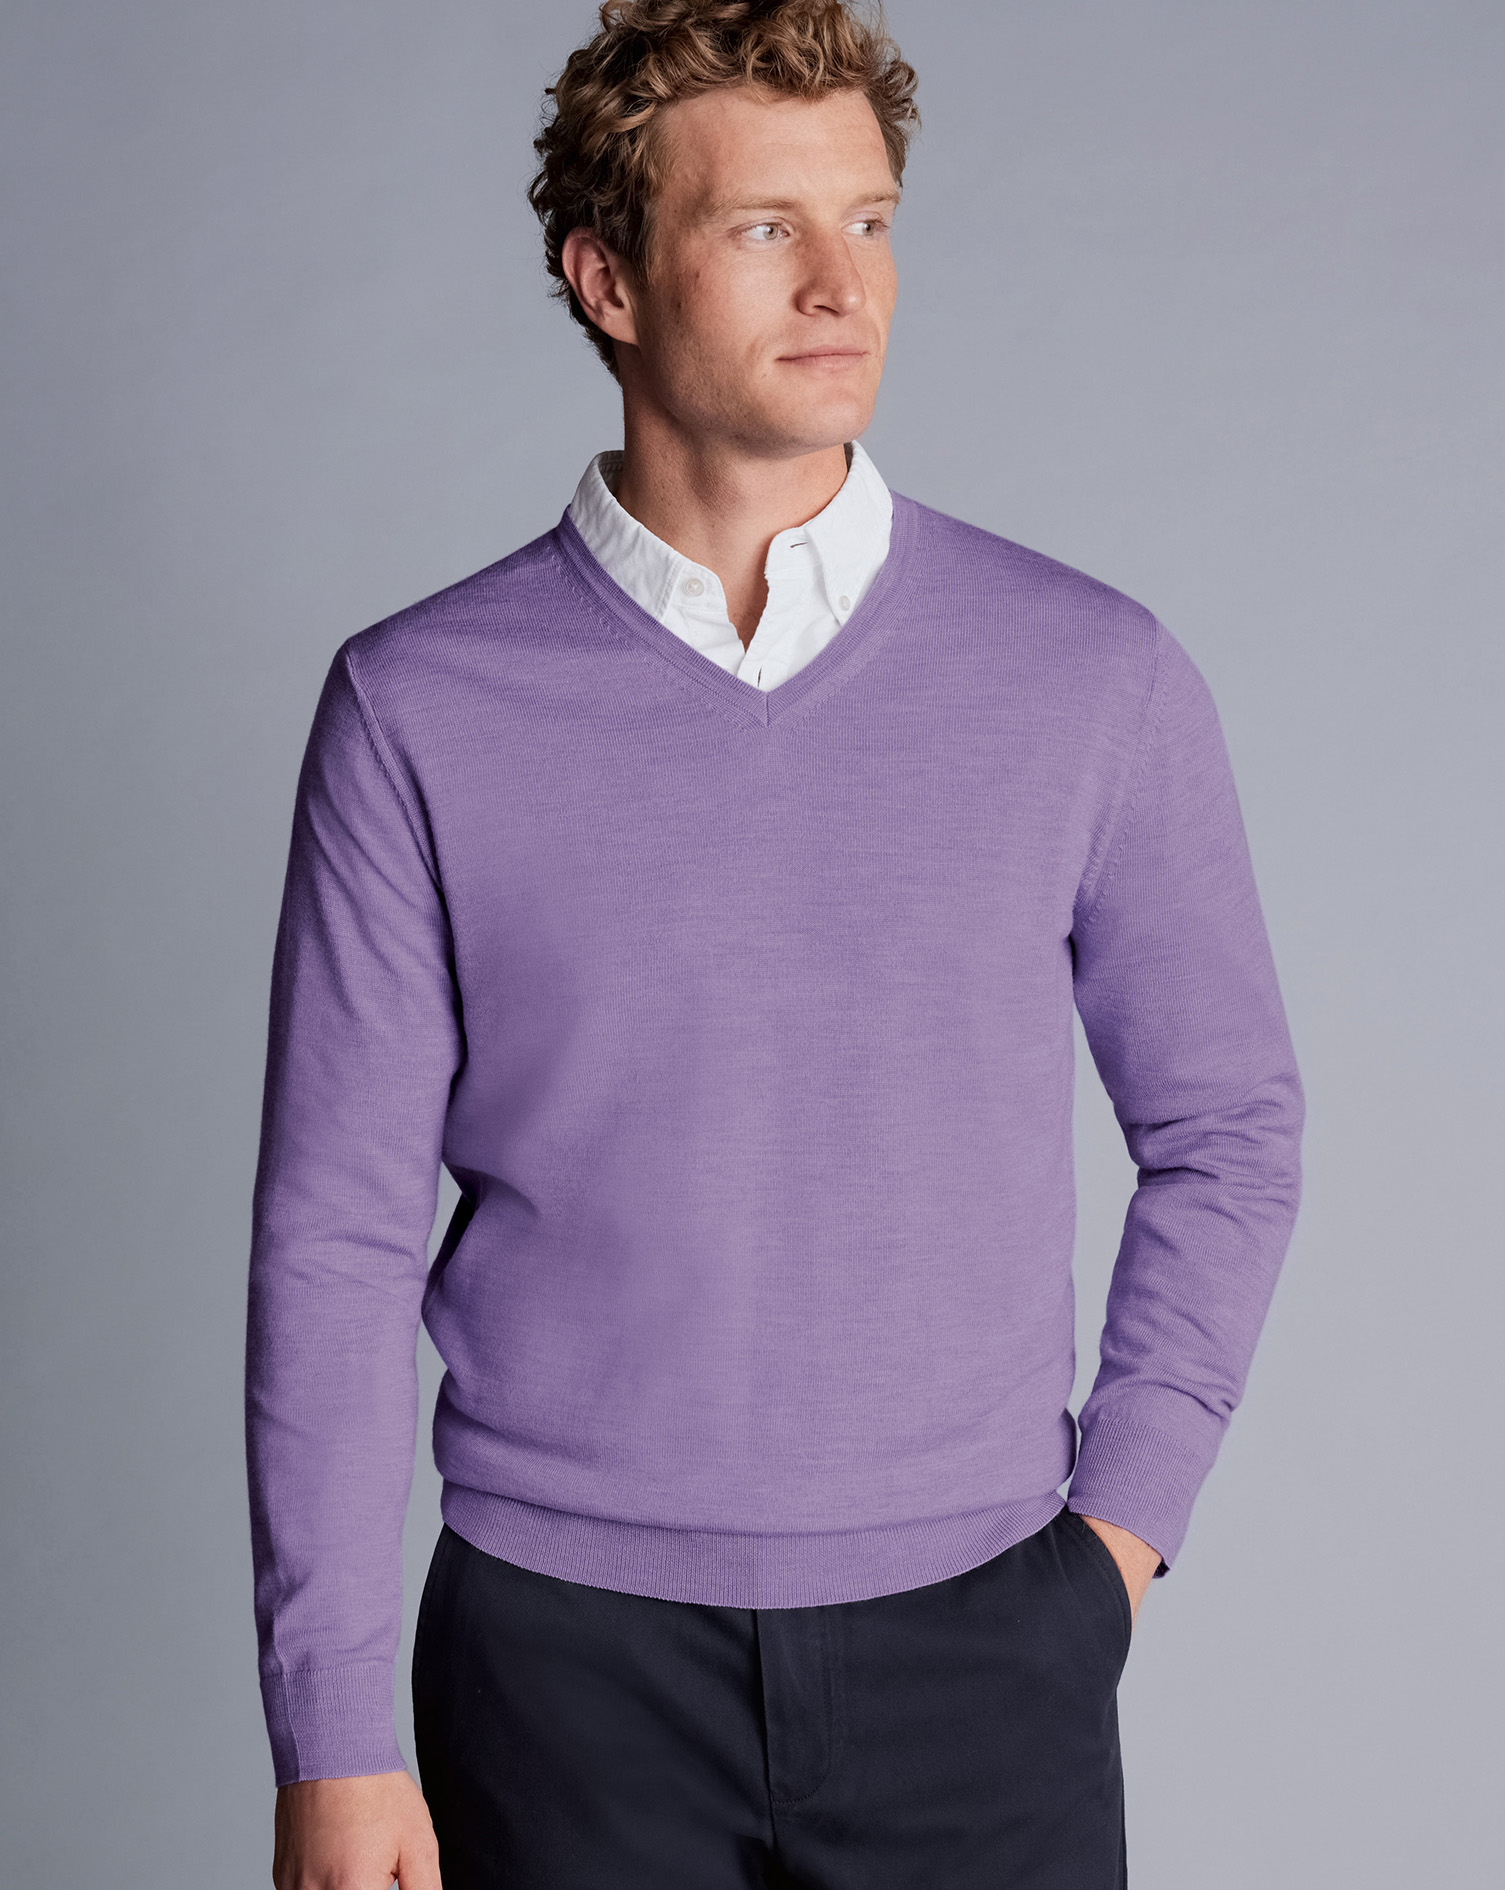 Men's Charles Tyrwhitt Merino V-Neck Sweater - Lavender Purple Size Medium Wool
